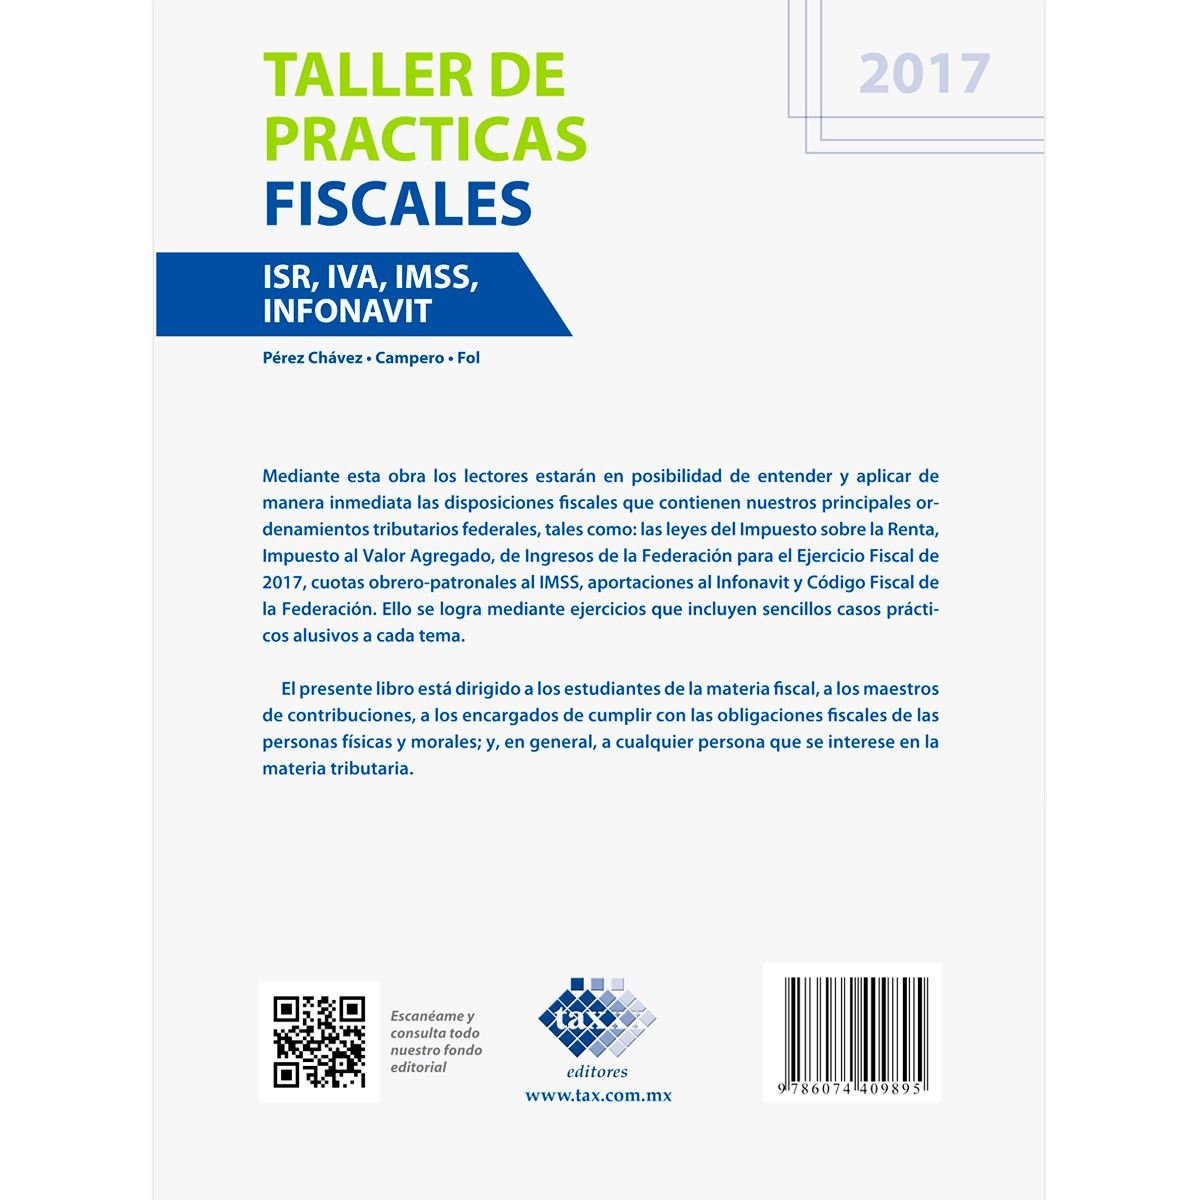 Taller de Practicas Fiscales. ISR, IVA, IMSS Infonavit 2017